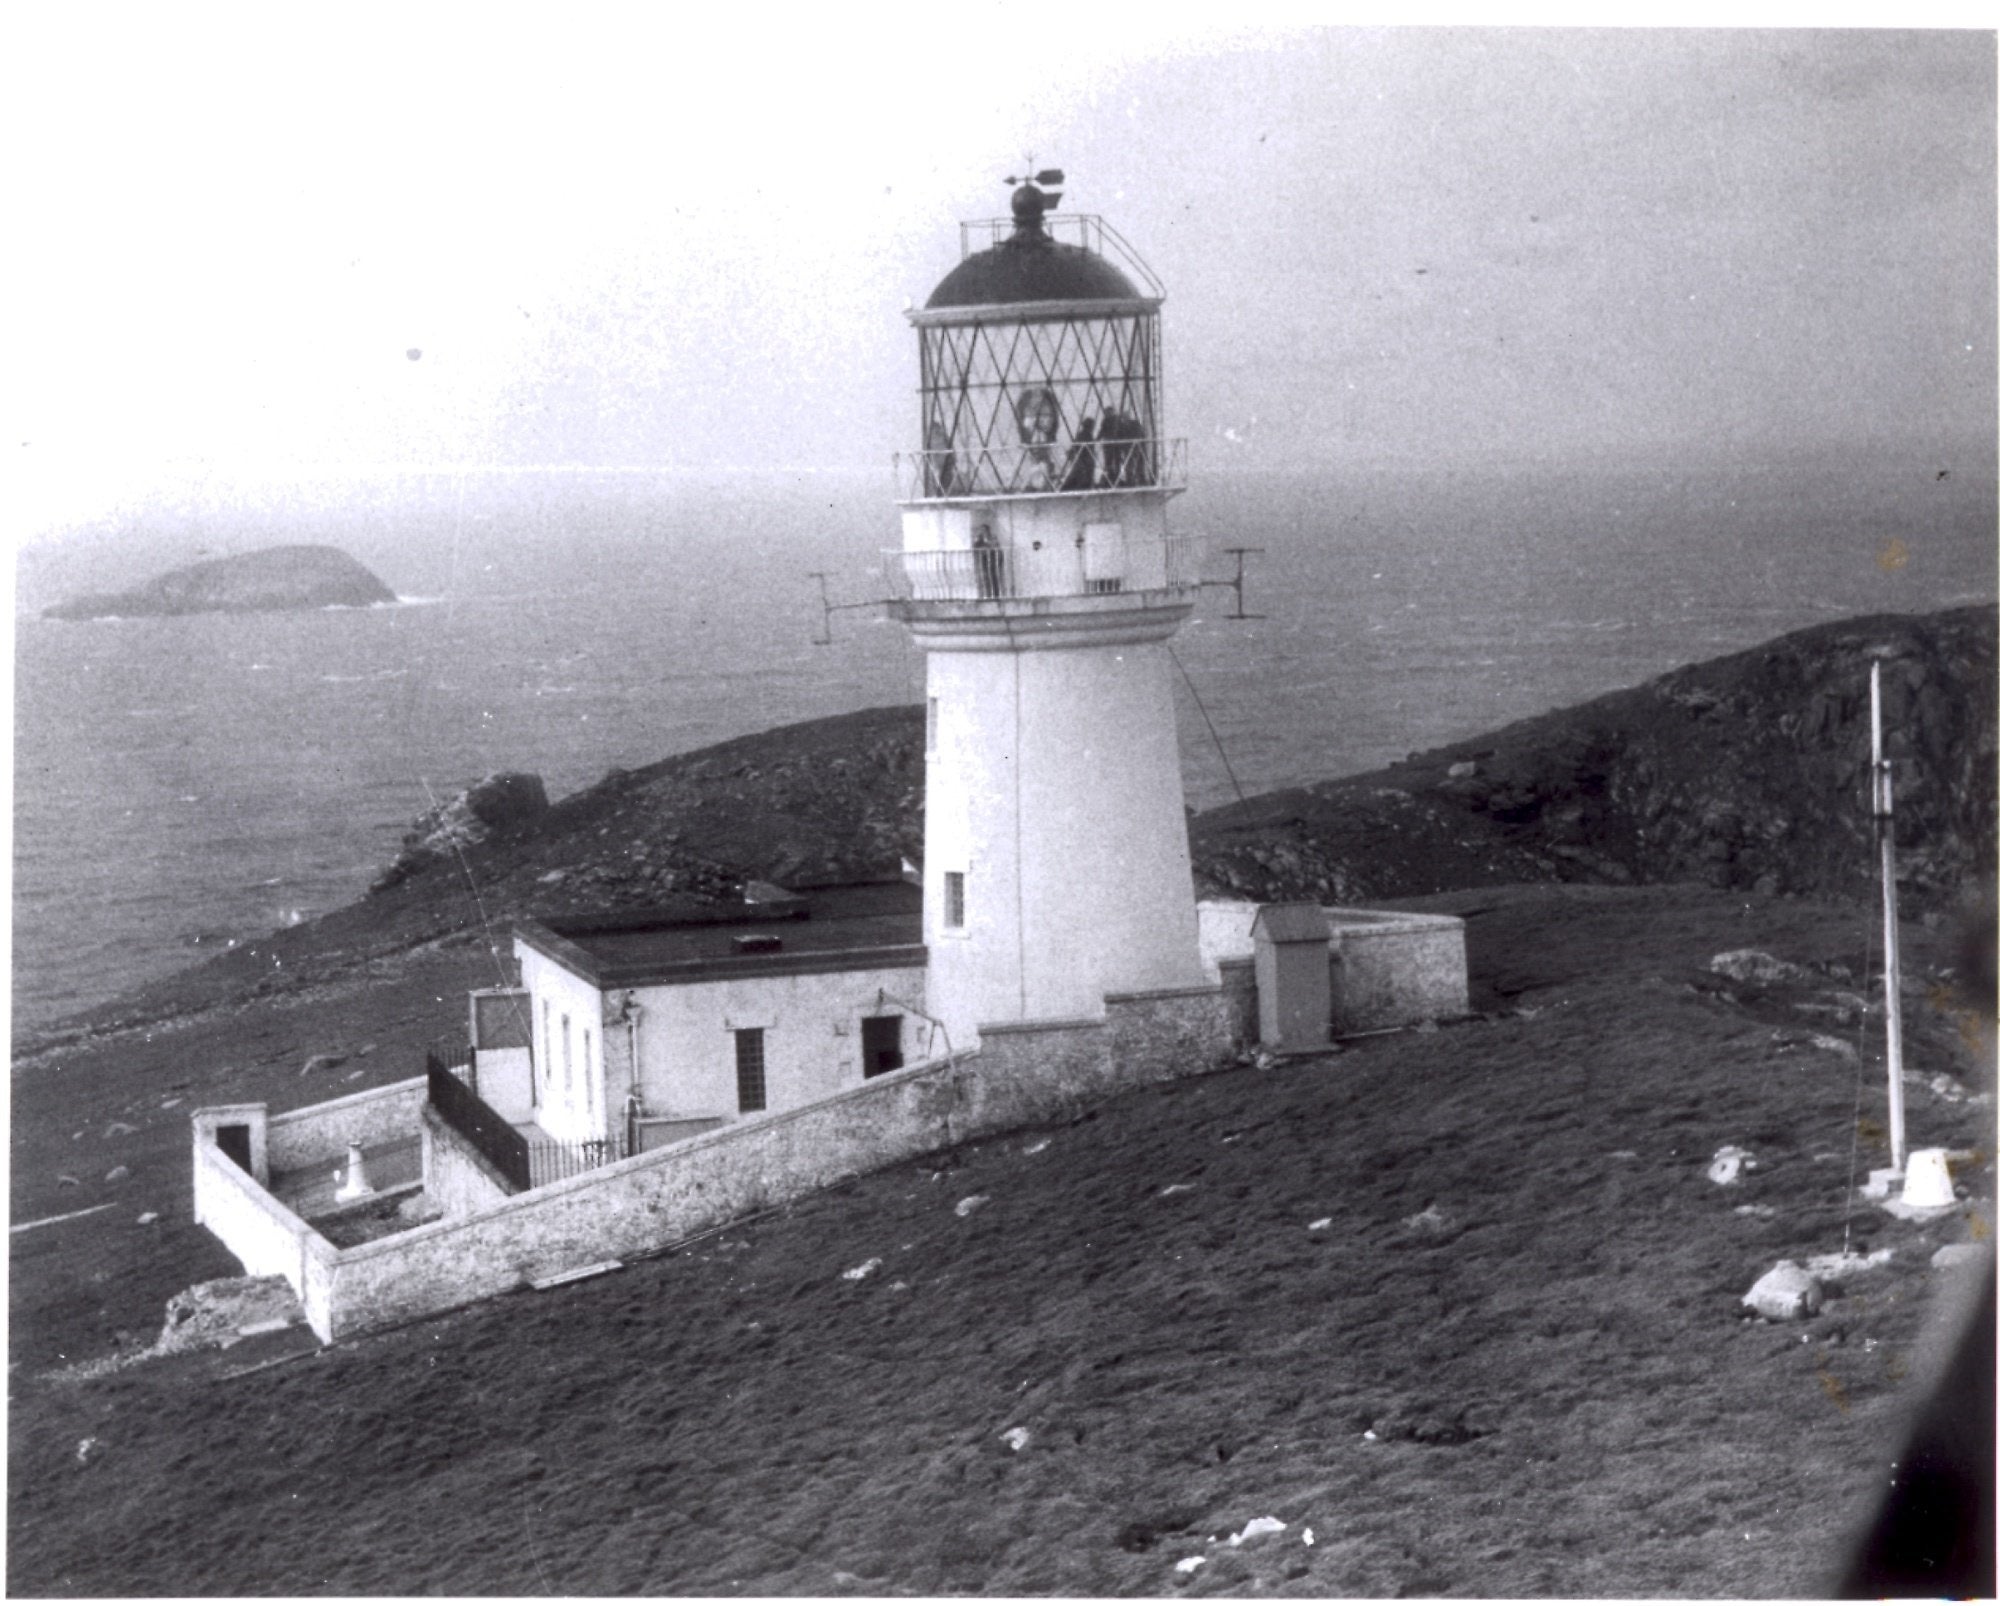 The Flannan Isles lighthouse